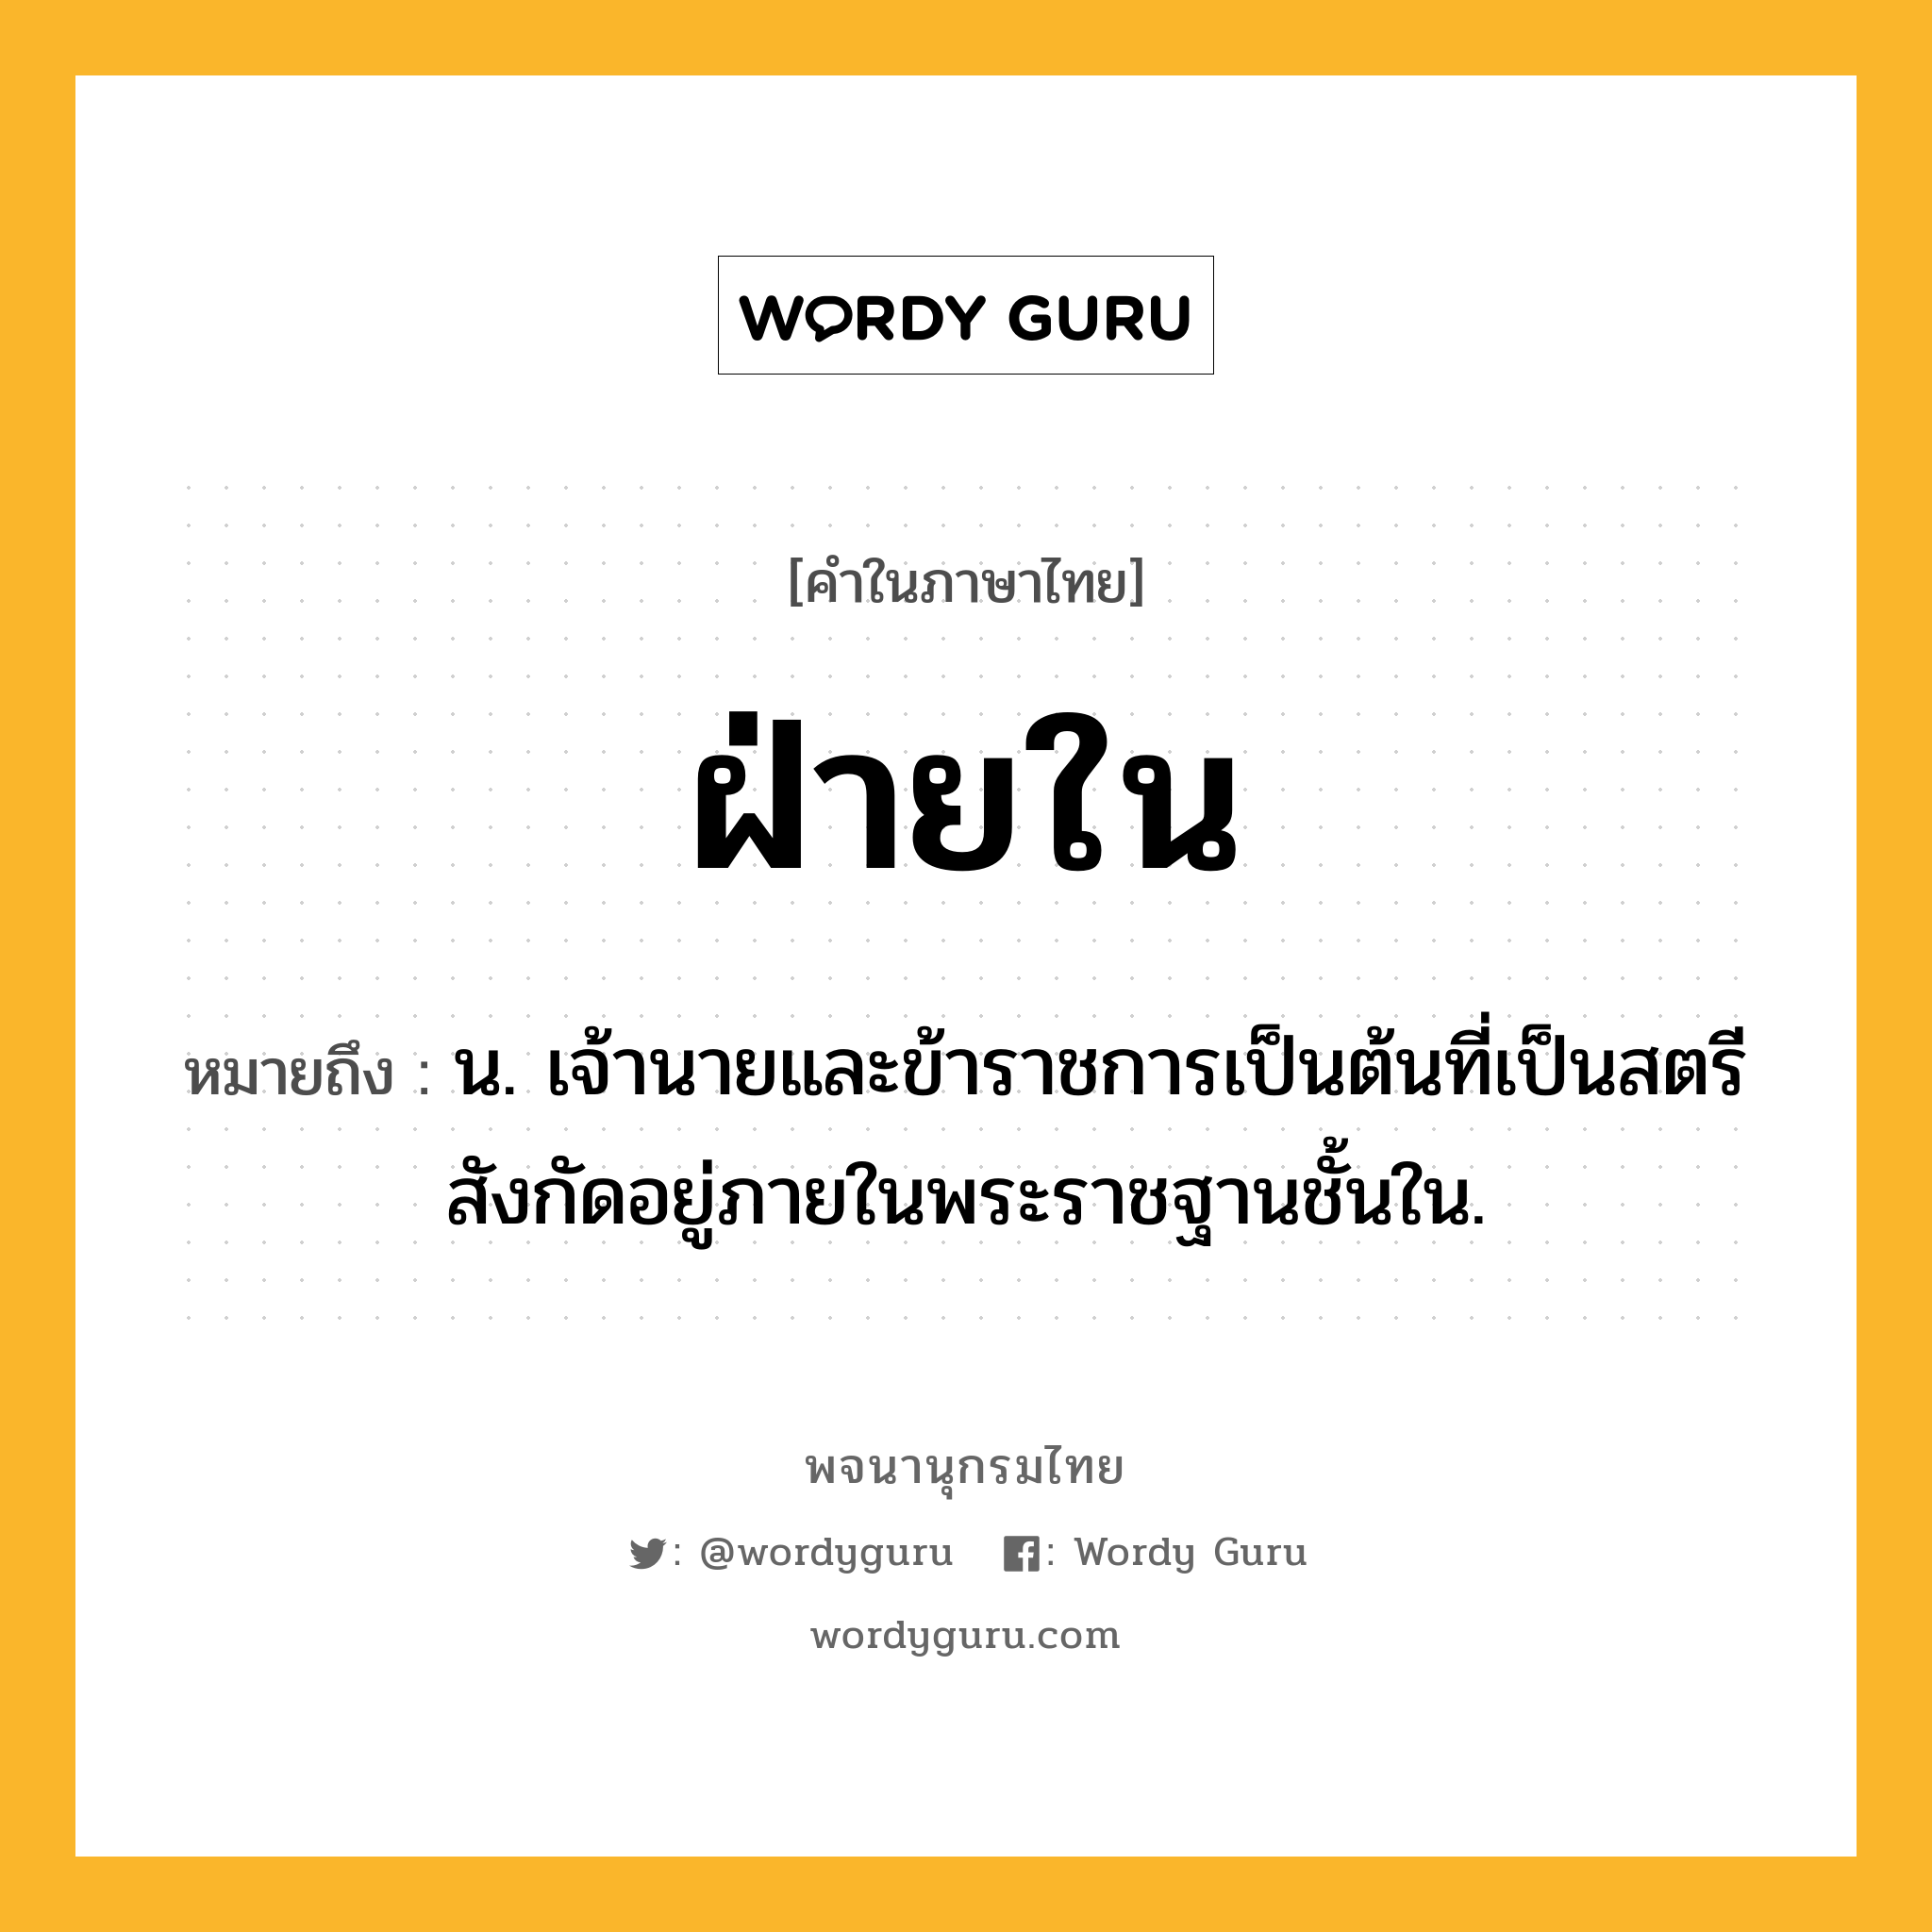 ฝ่ายใน ความหมาย หมายถึงอะไร?, คำในภาษาไทย ฝ่ายใน หมายถึง น. เจ้านายและข้าราชการเป็นต้นที่เป็นสตรีสังกัดอยู่ภายในพระราชฐานชั้นใน.